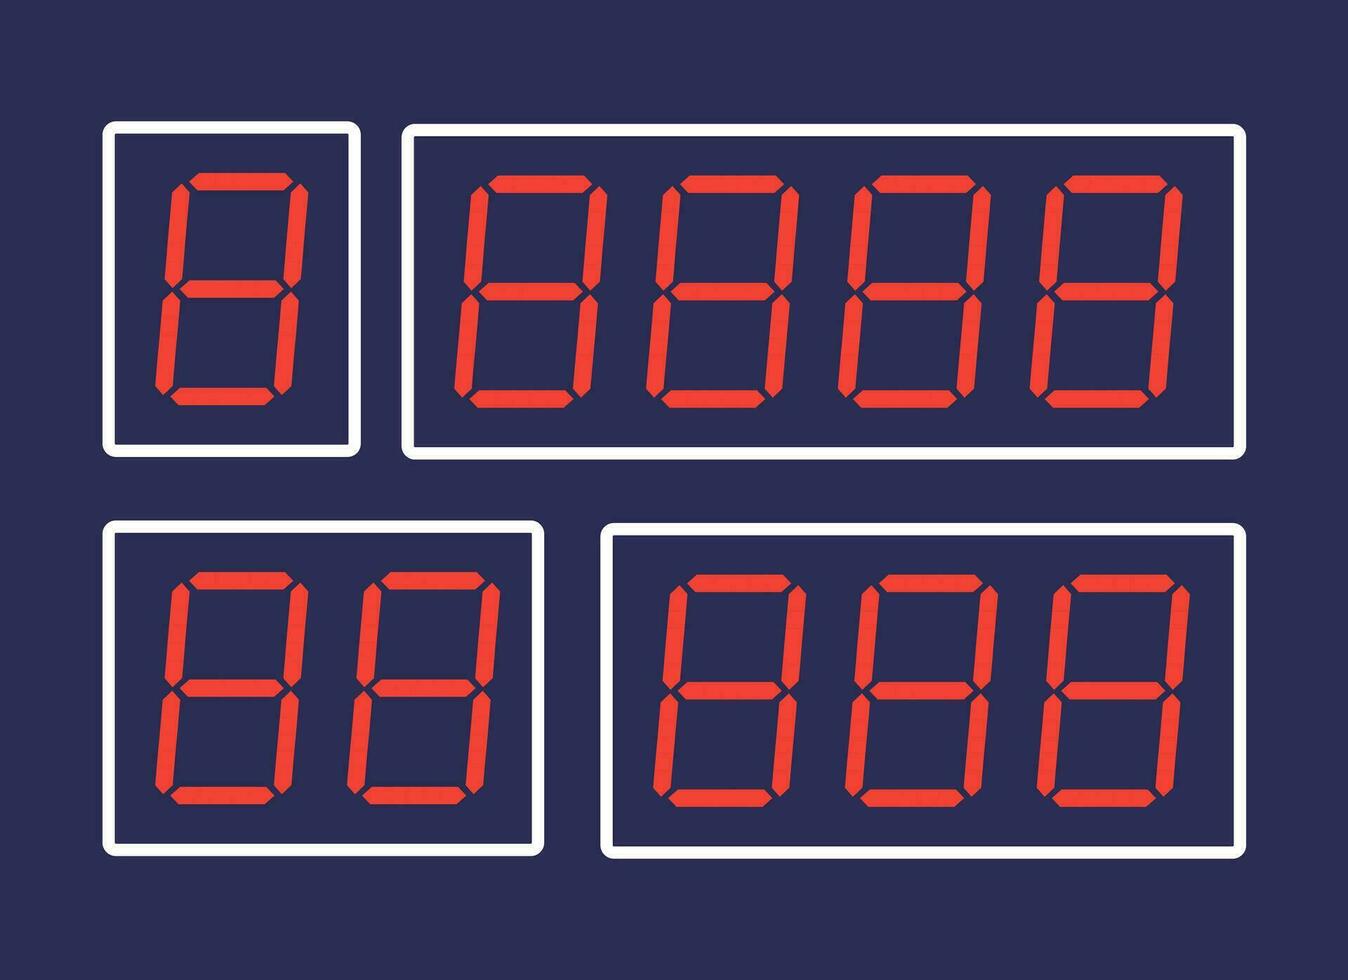 un vector ilustración de rojo digital números diseñado para digital alarma relojes o temporizadores, presentado en contra un oscuro fondo.